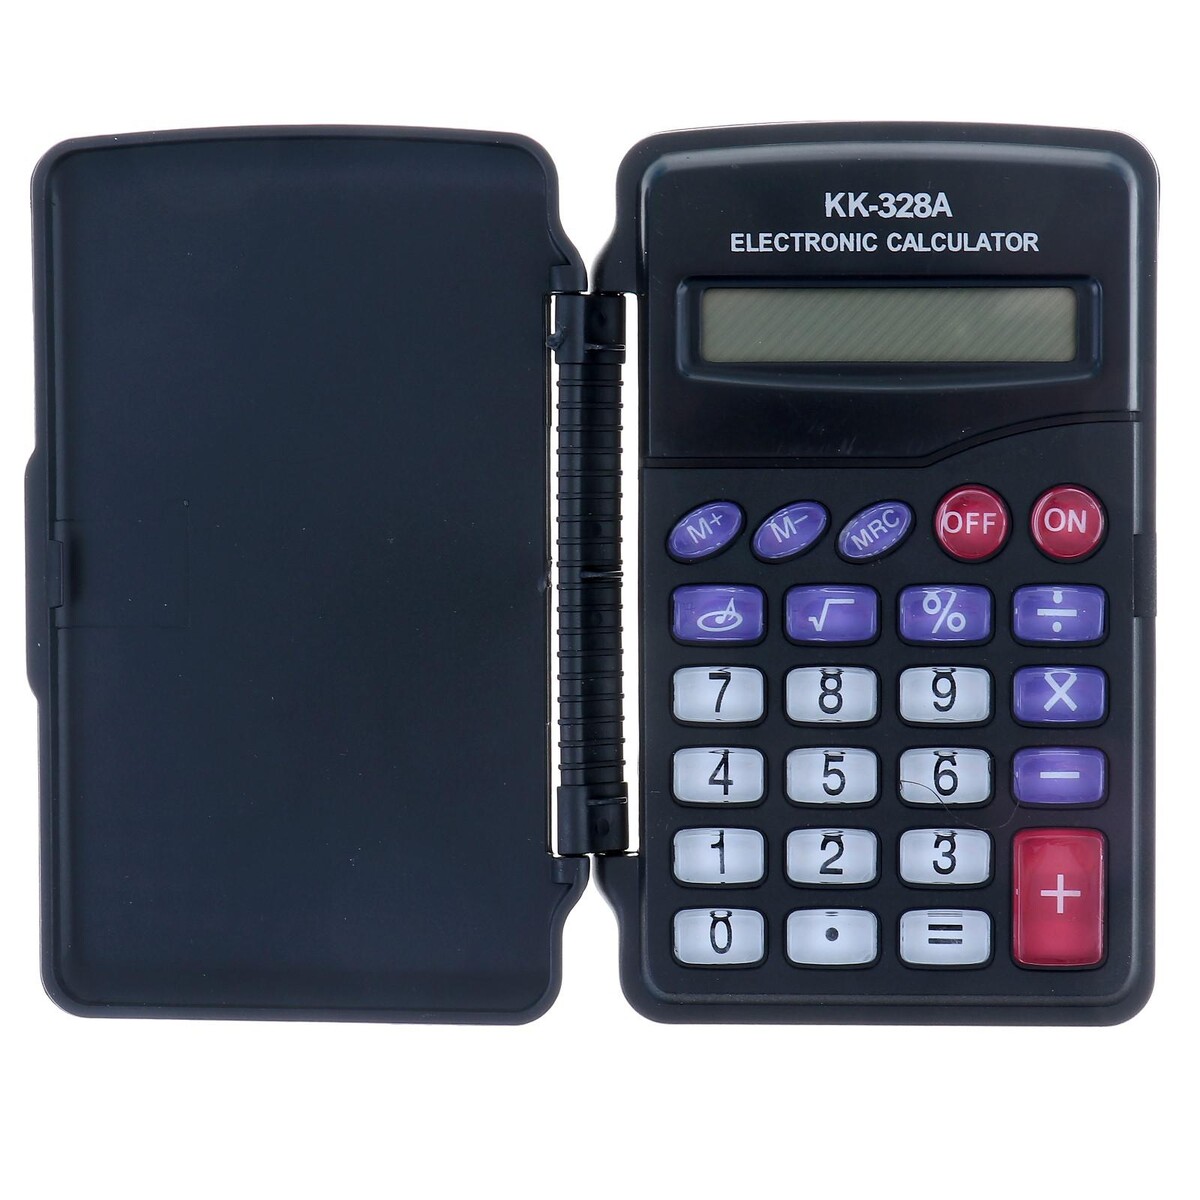 Калькулятор карманный, 8-разрядный, kk-328, с мелодией калькулятор карманный 8 разрядный kk 402 работает от батарейки